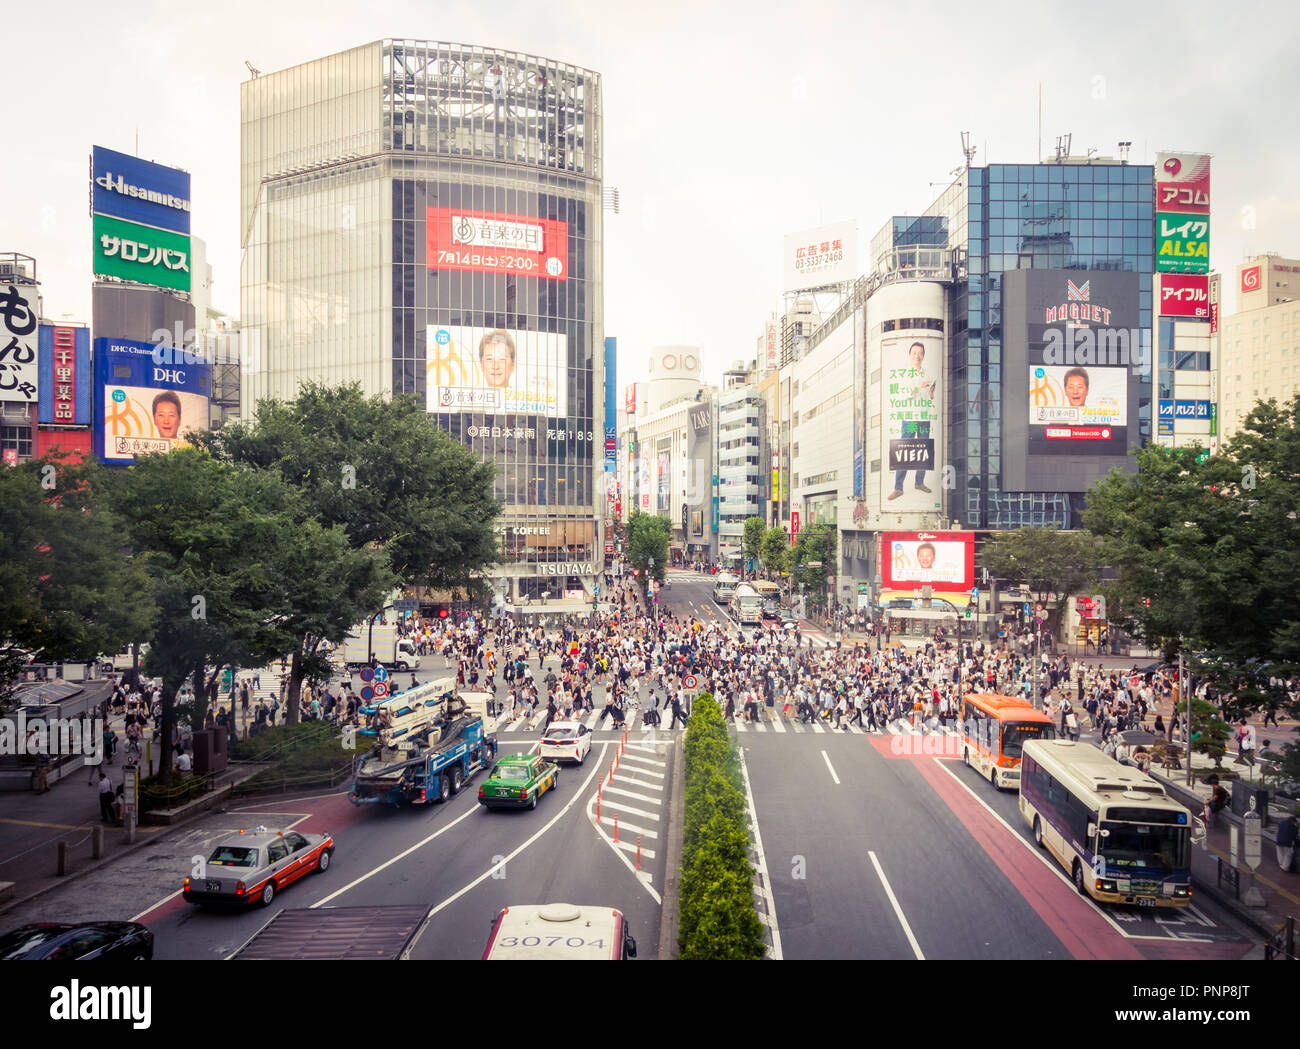 La trafficata Shibuya scramble crossing (Shibuya Crossing), la fama di  essere il più trafficato crosswalk nel mondo. Shibuya, Tokyo, Giappone Foto  stock - Alamy